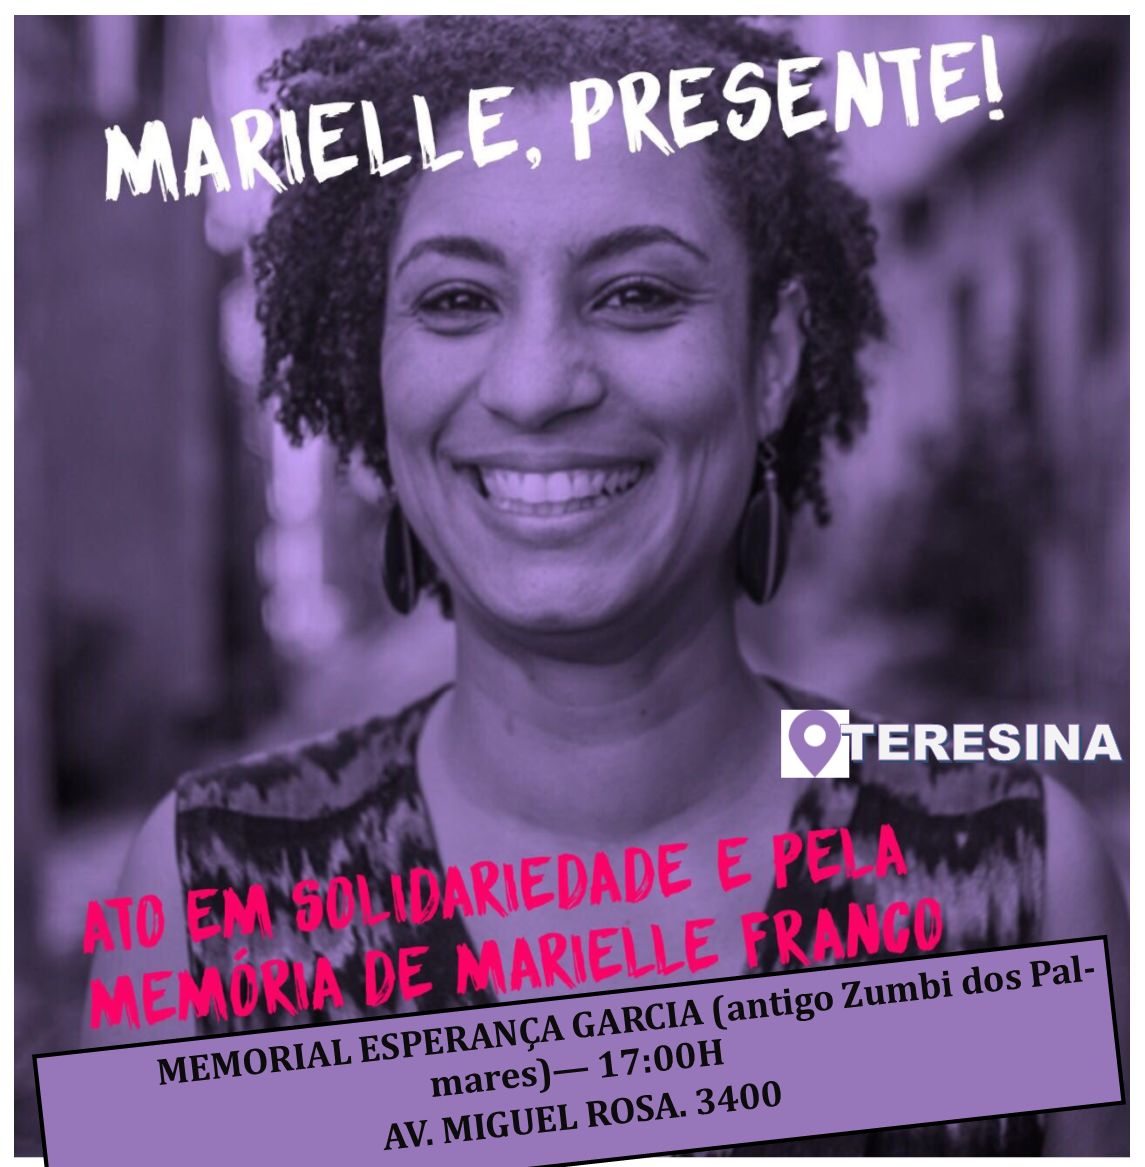 PSOL realiza ato em memória de Marielle Franco